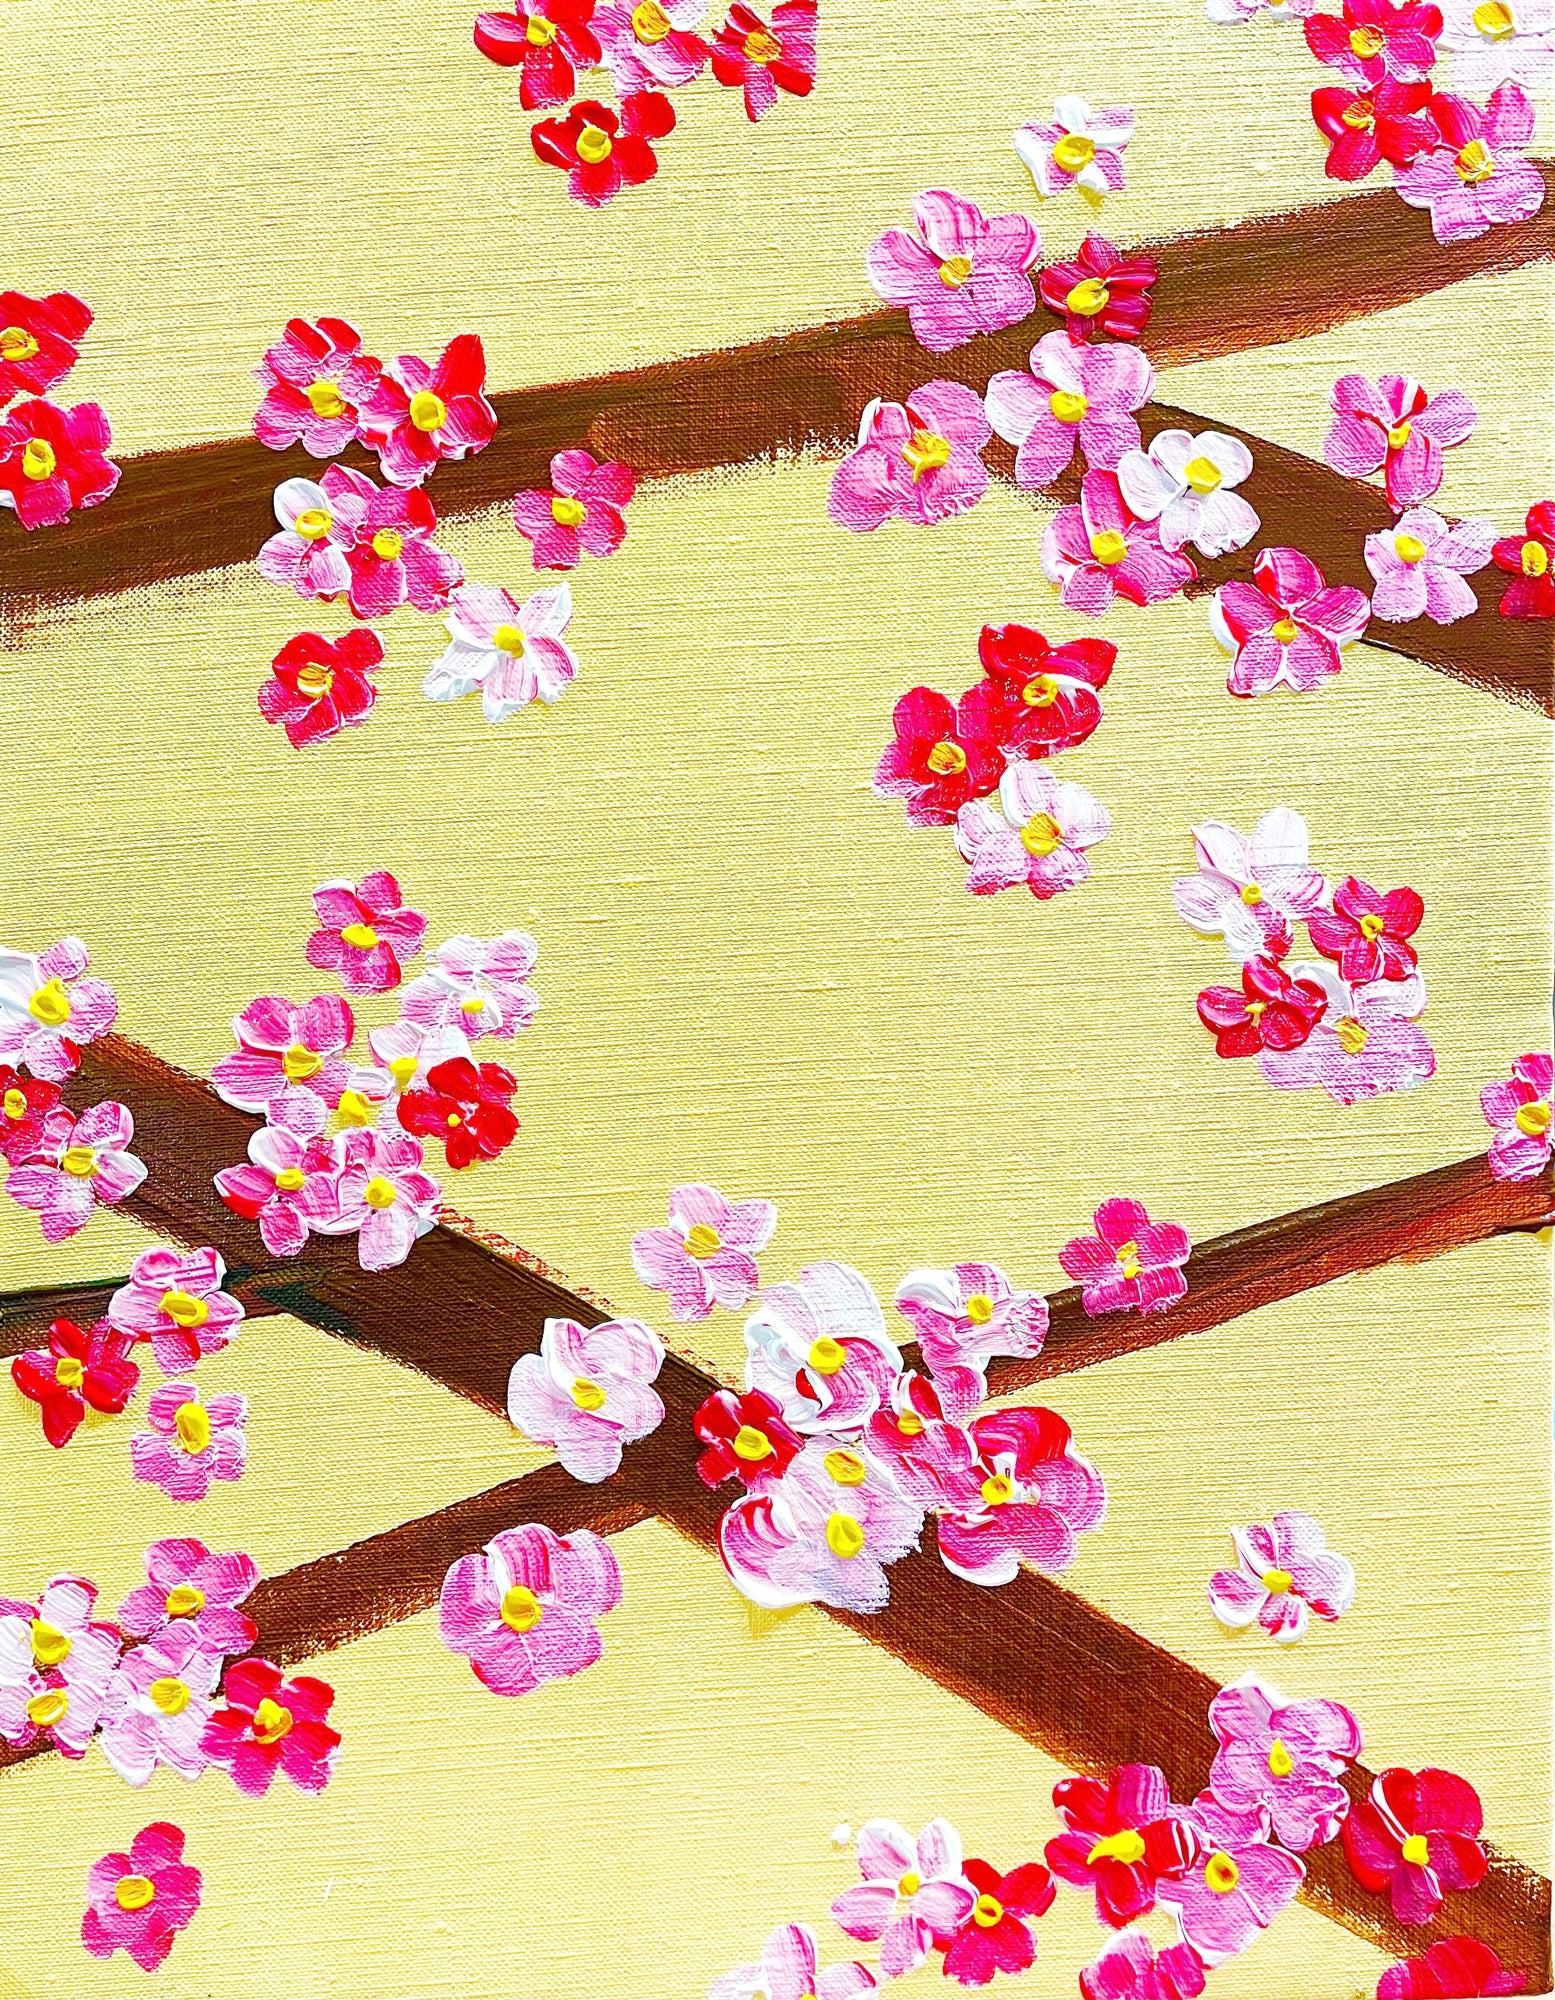 06月21日 (金) 19:00-21:00 | 上野/根津 | フォーシーズンズ・フラワーペインティング (Four Seasons Flower Painting at Ueno/Nezu)